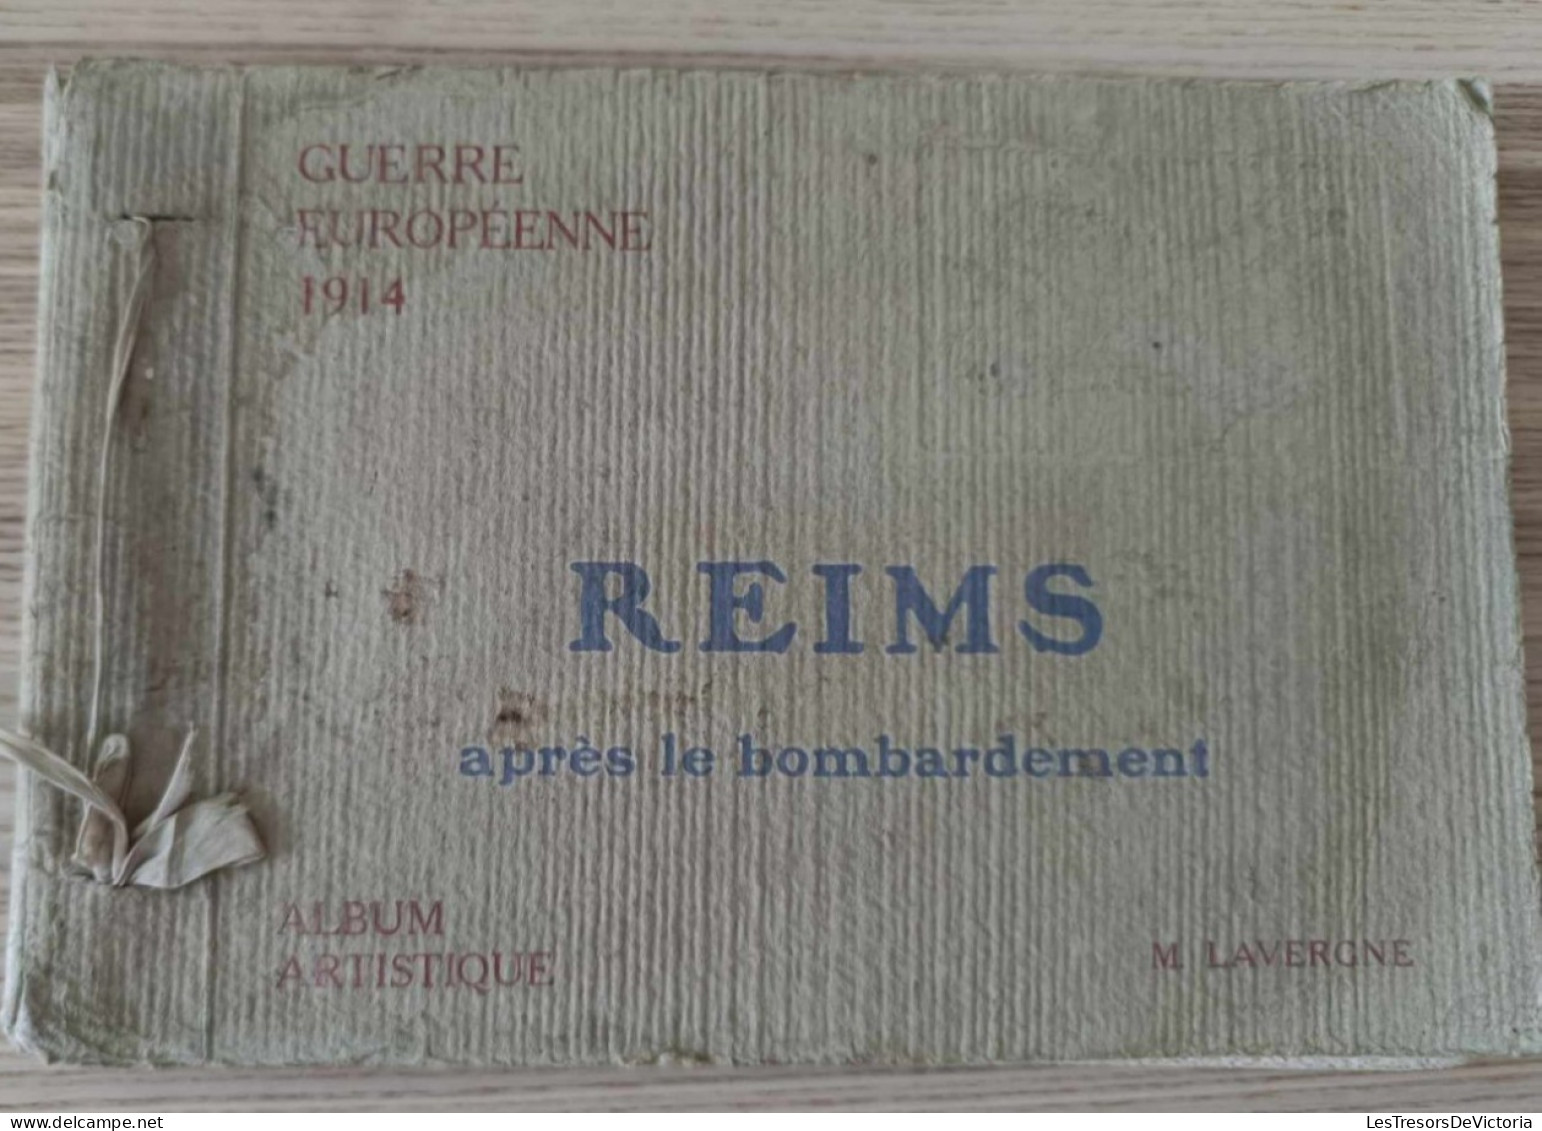 Recceuil De Vues - Reims Après Le Bombardement - Guerre Européenne 1914 - M. Lavergne - Album Artistique - Guerra 1914-18